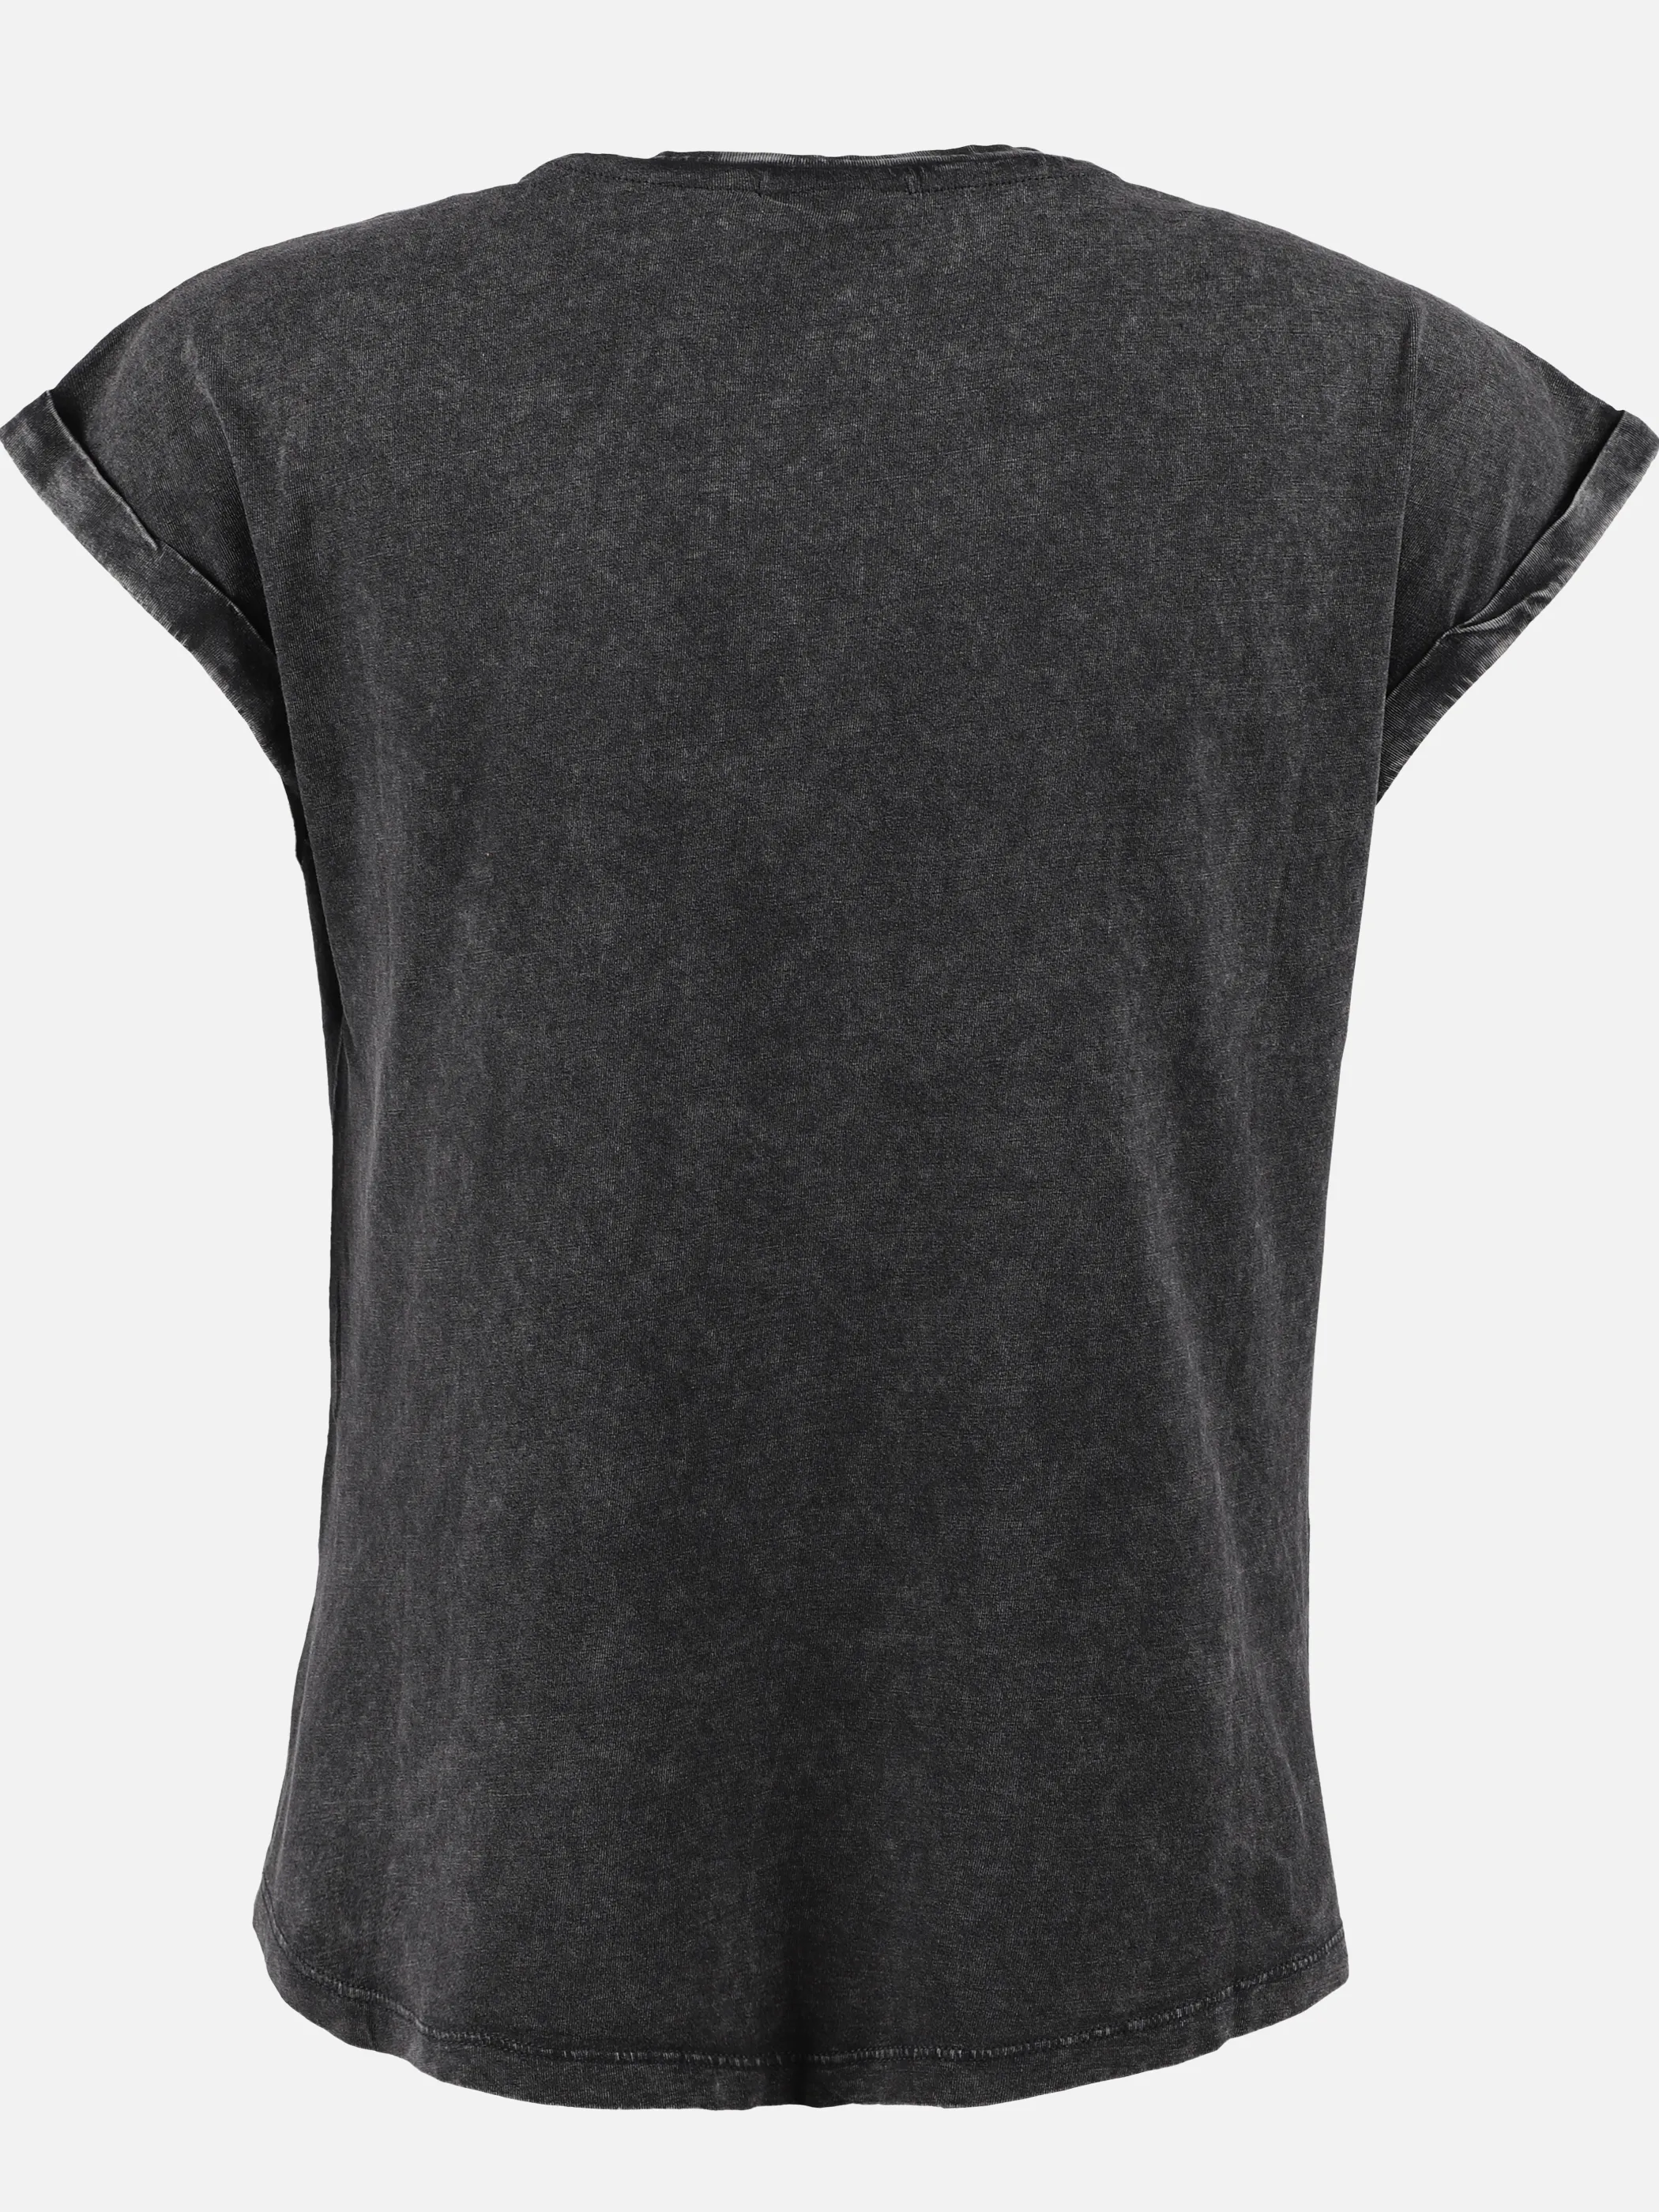 Stop + Go JM T- Shirt mit Frontdruck in schwarz Schwarz 891496 SCHWARZ 2